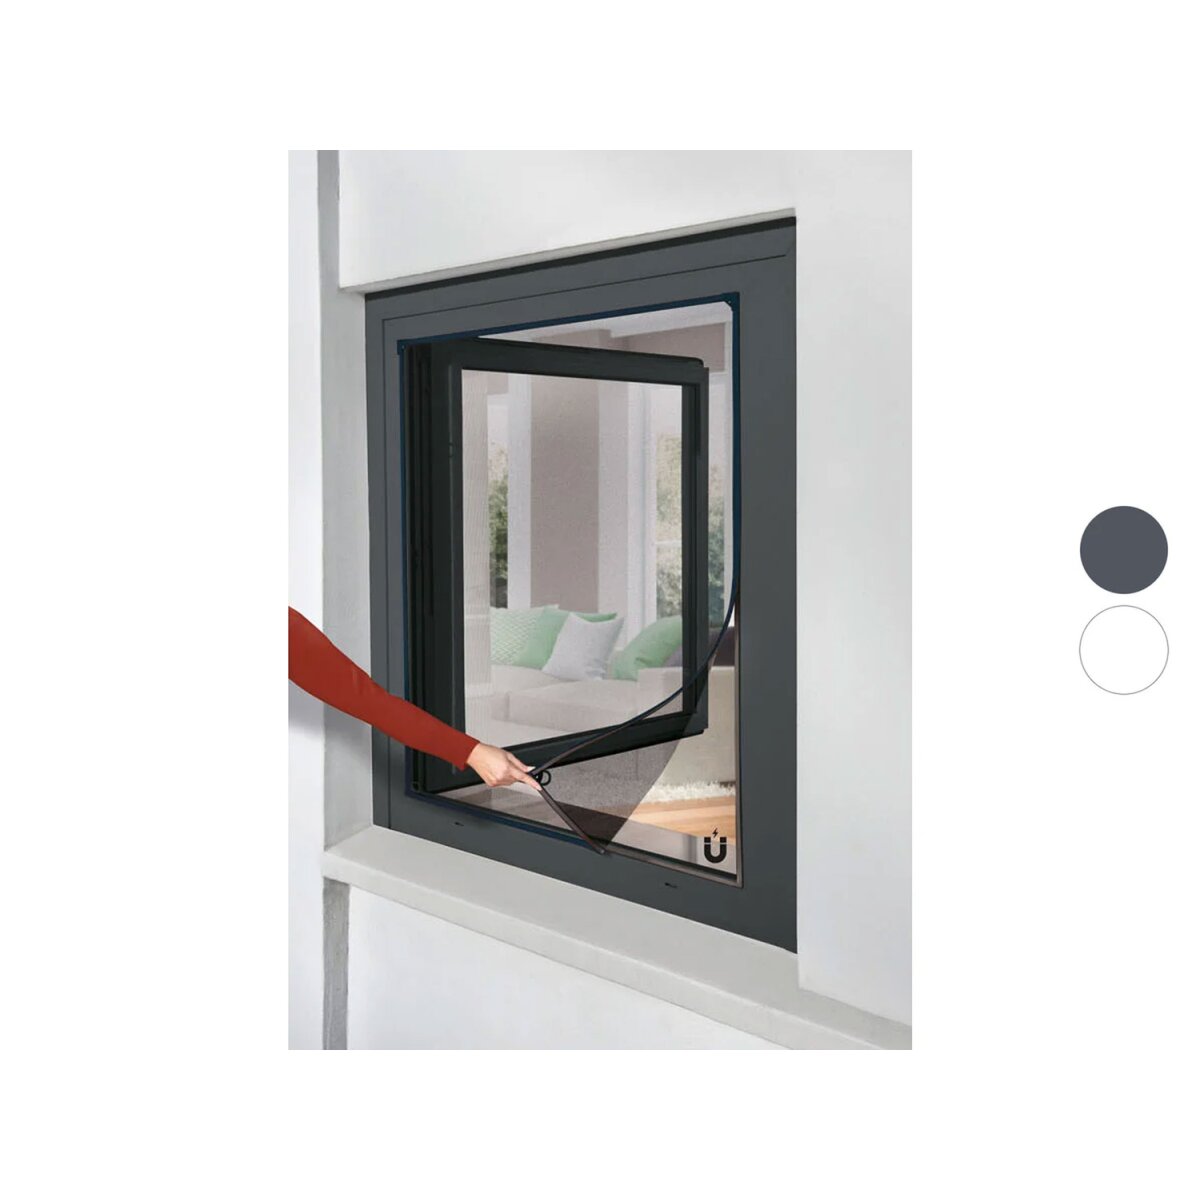 110 130 Livarno - B-Ware, 10,99 Insektenschutzfenster, Home magnetisch, x cm €